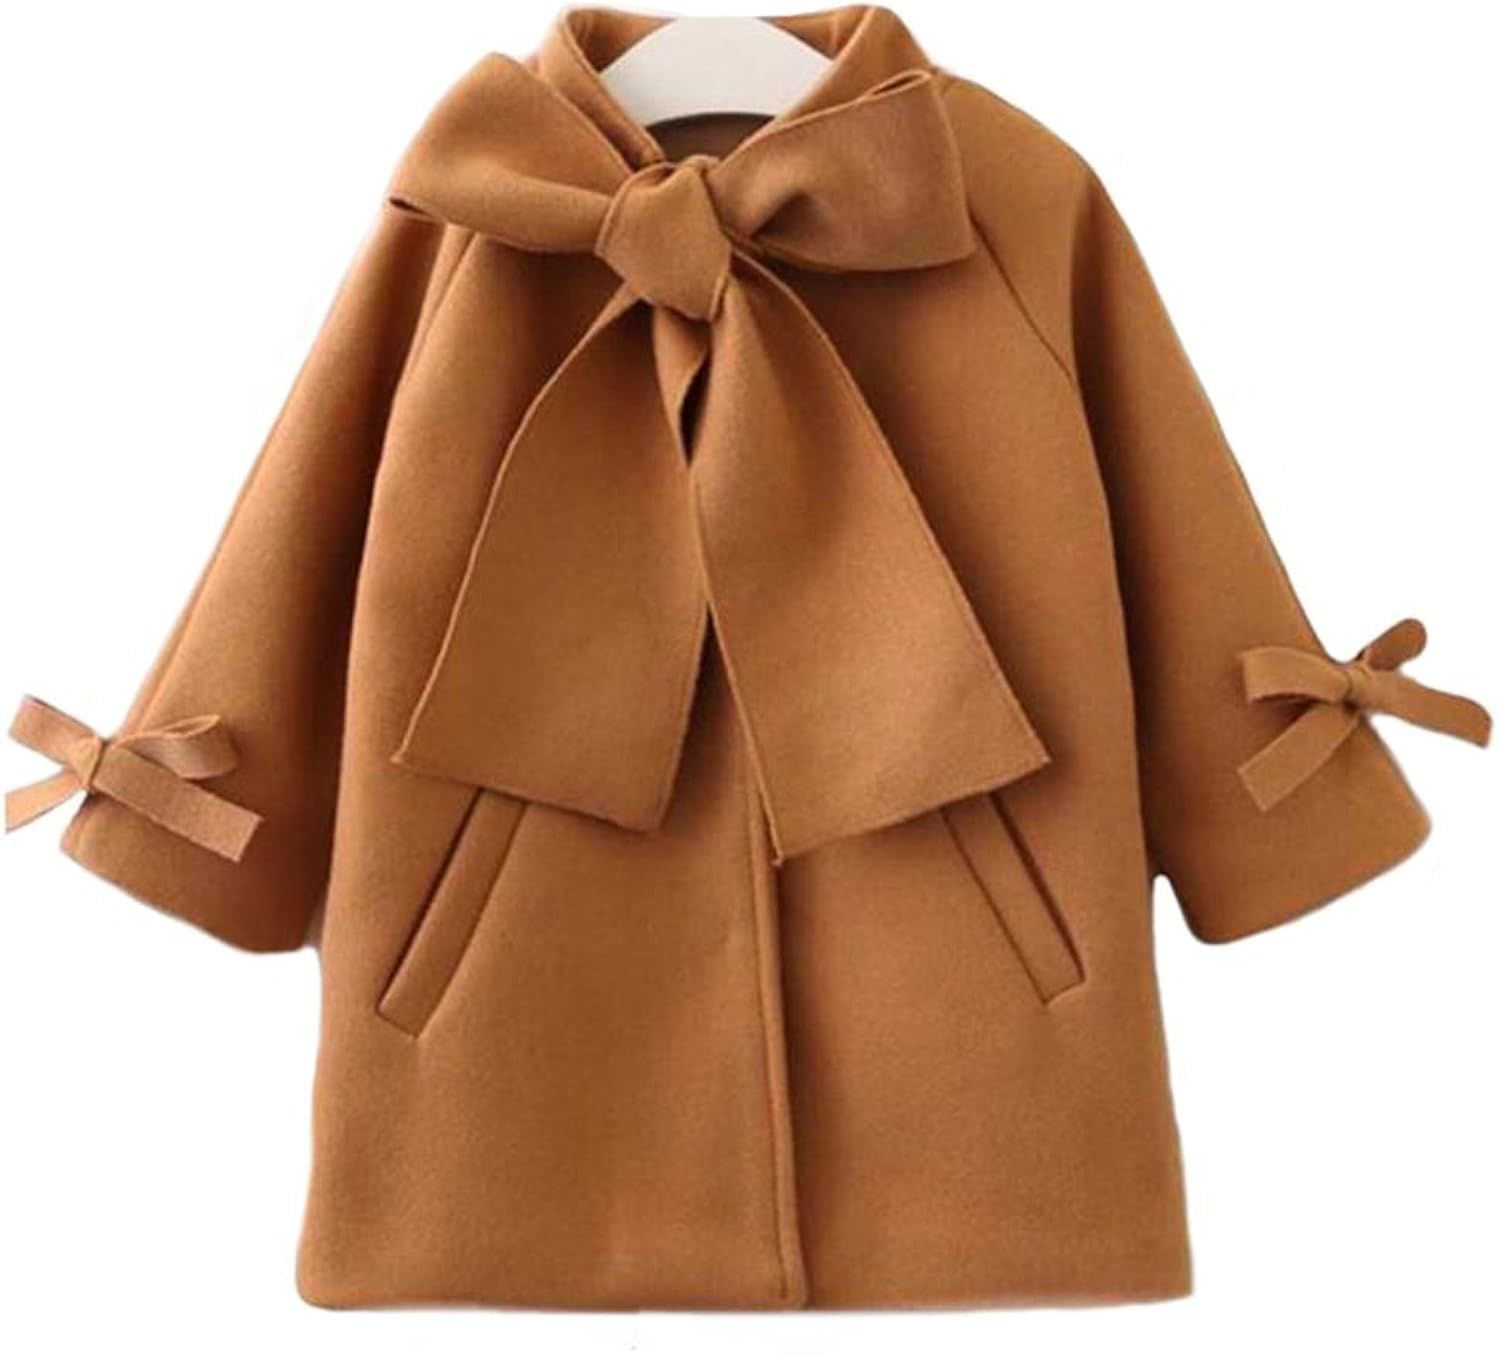 SUUGEN Toddler Kid Baby Girls Warm Wool Bowknot Coat Winter Overcoat Outwear Jacket | Amazon (US)